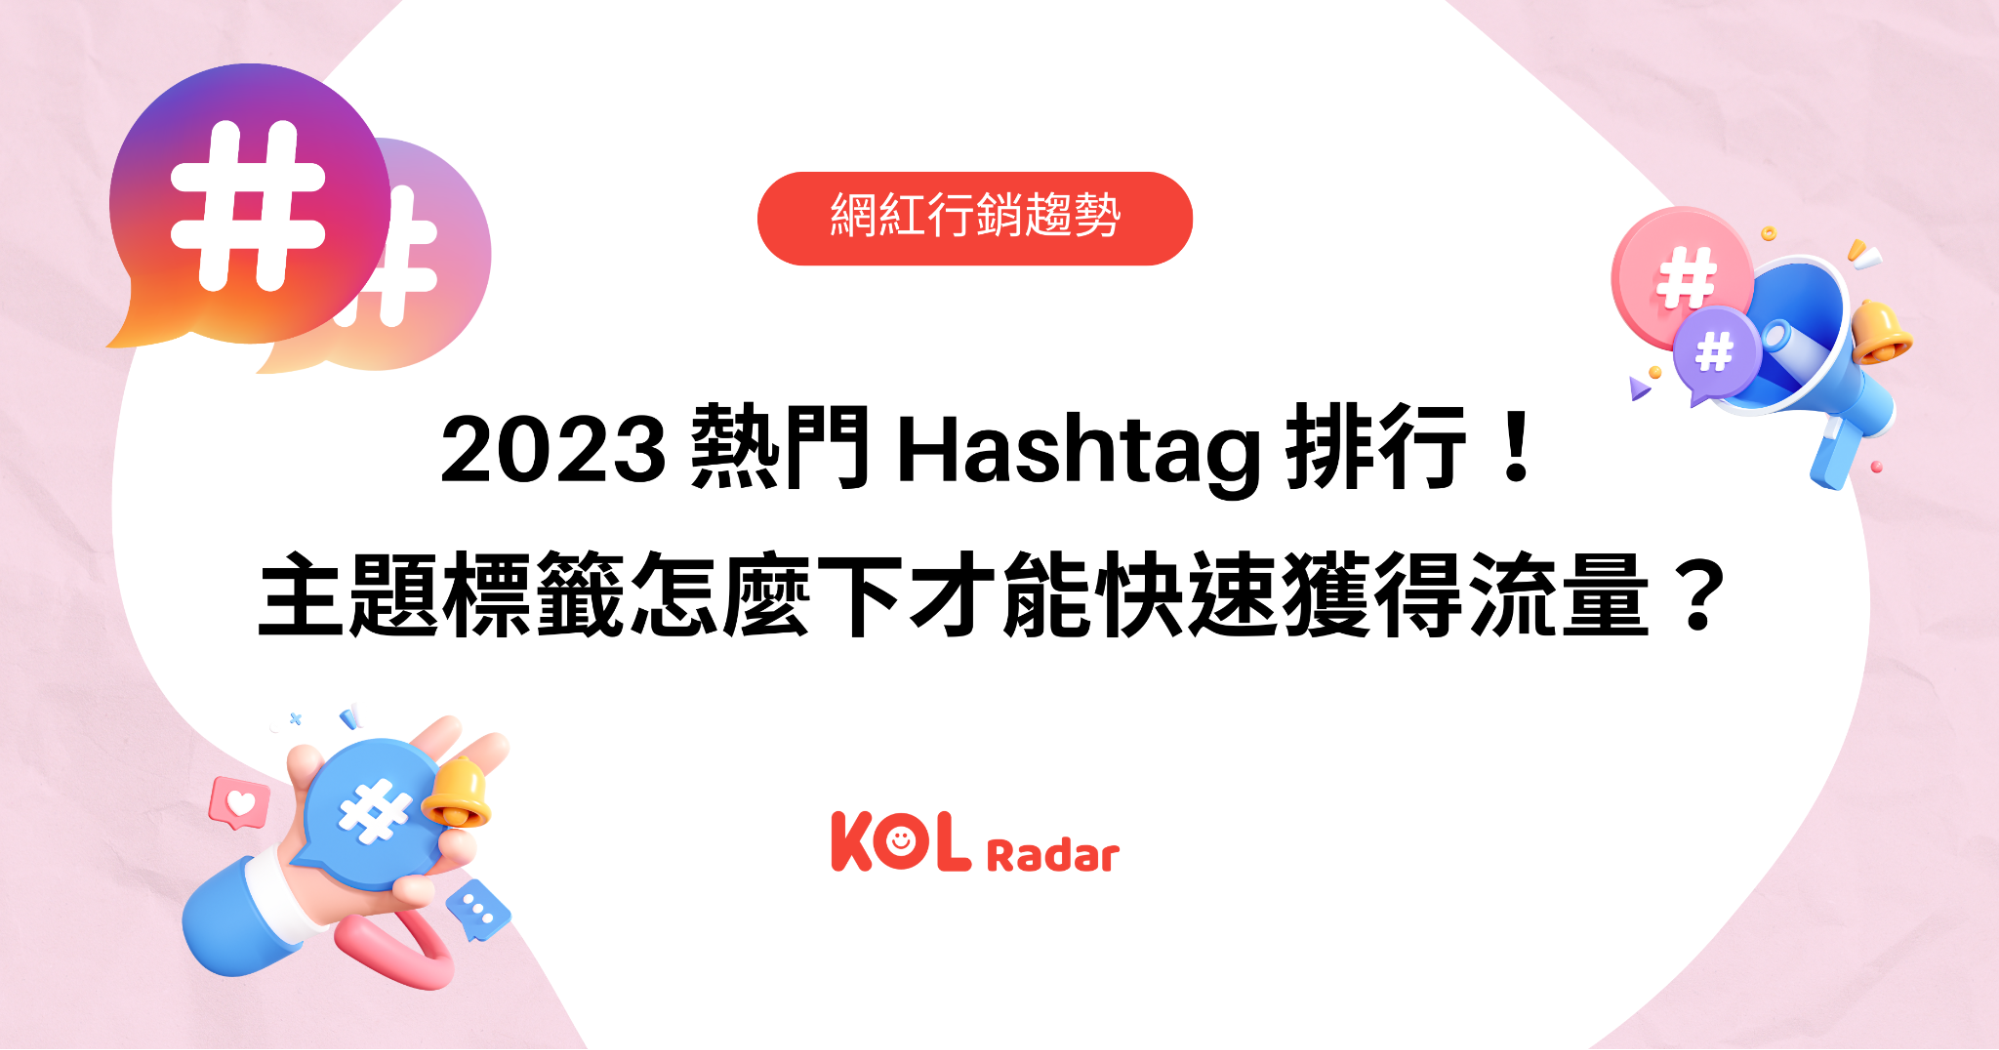 2023 熱門 Hashtag 排行！主題標籤怎麼下才能快速獲得流量？